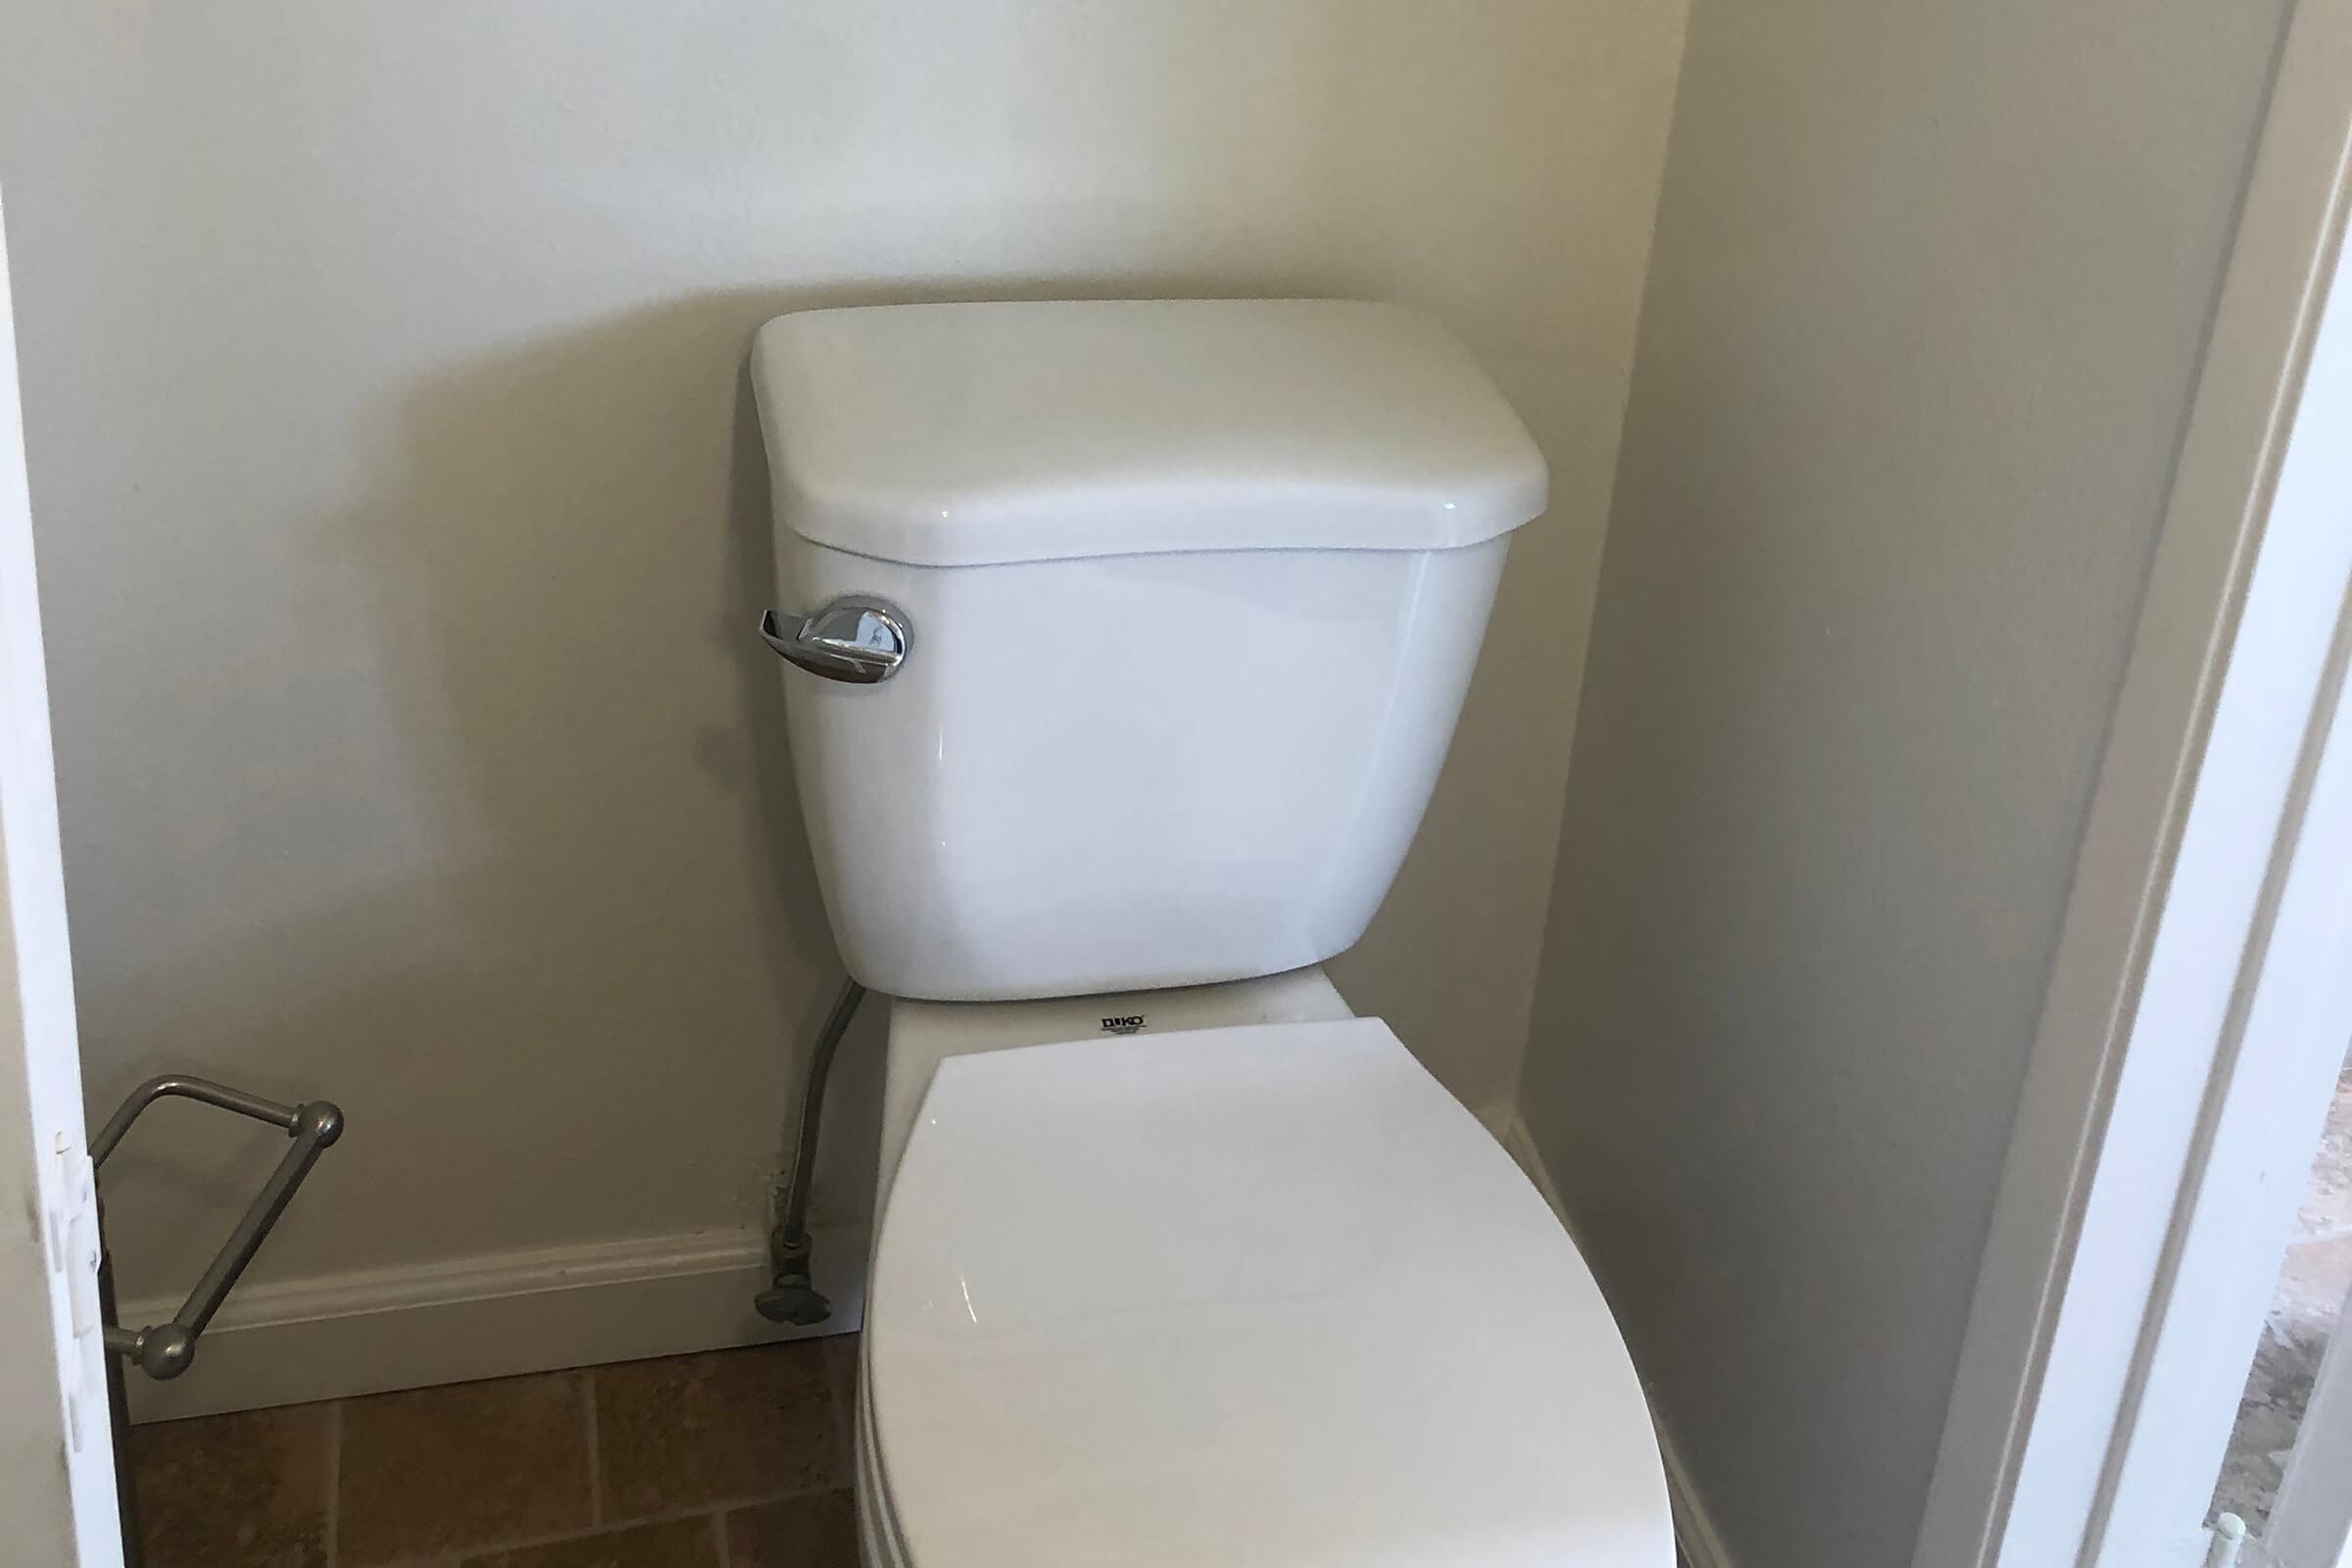 White toilet